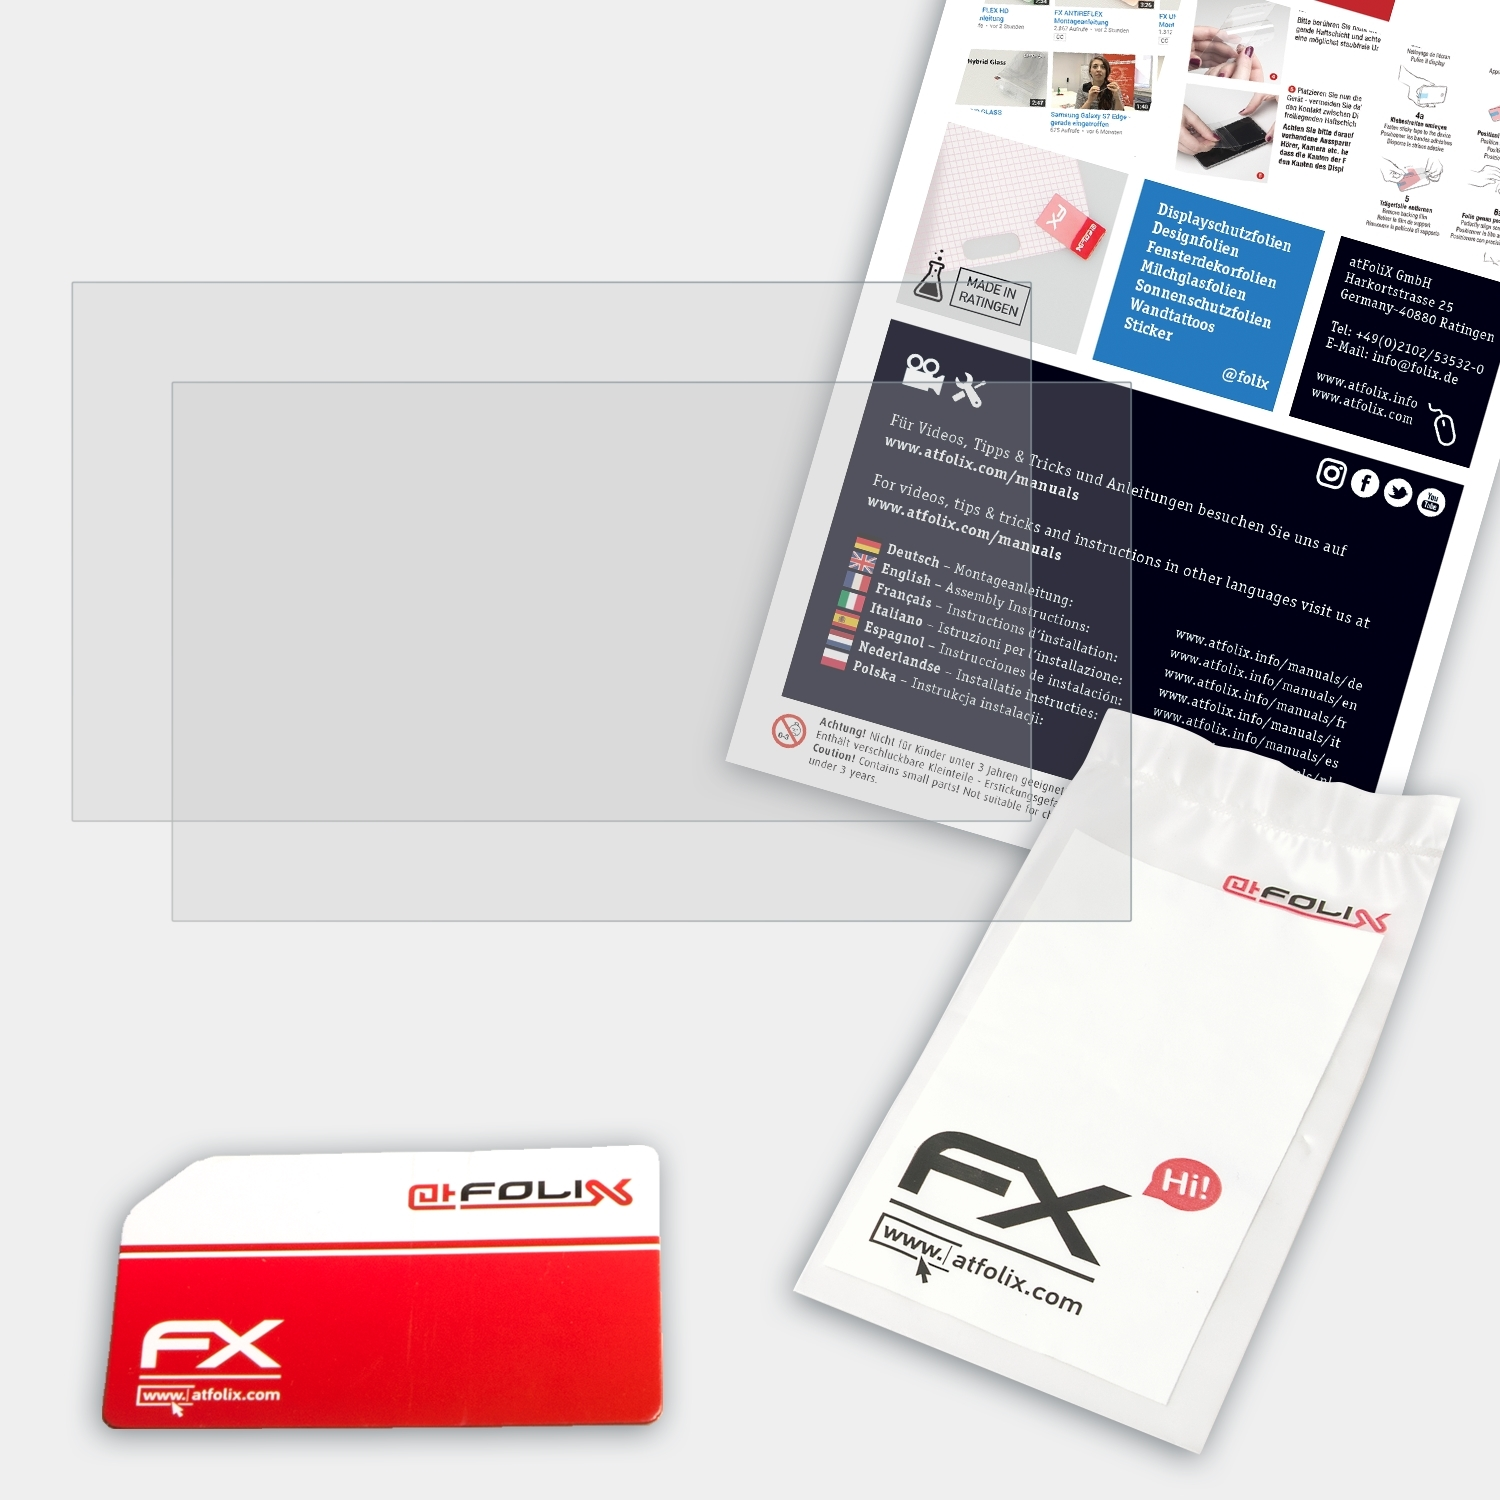 ATFOLIX 2x (MD61490)) FX-Antireflex Displayschutz(für Erazer P6605 Medion